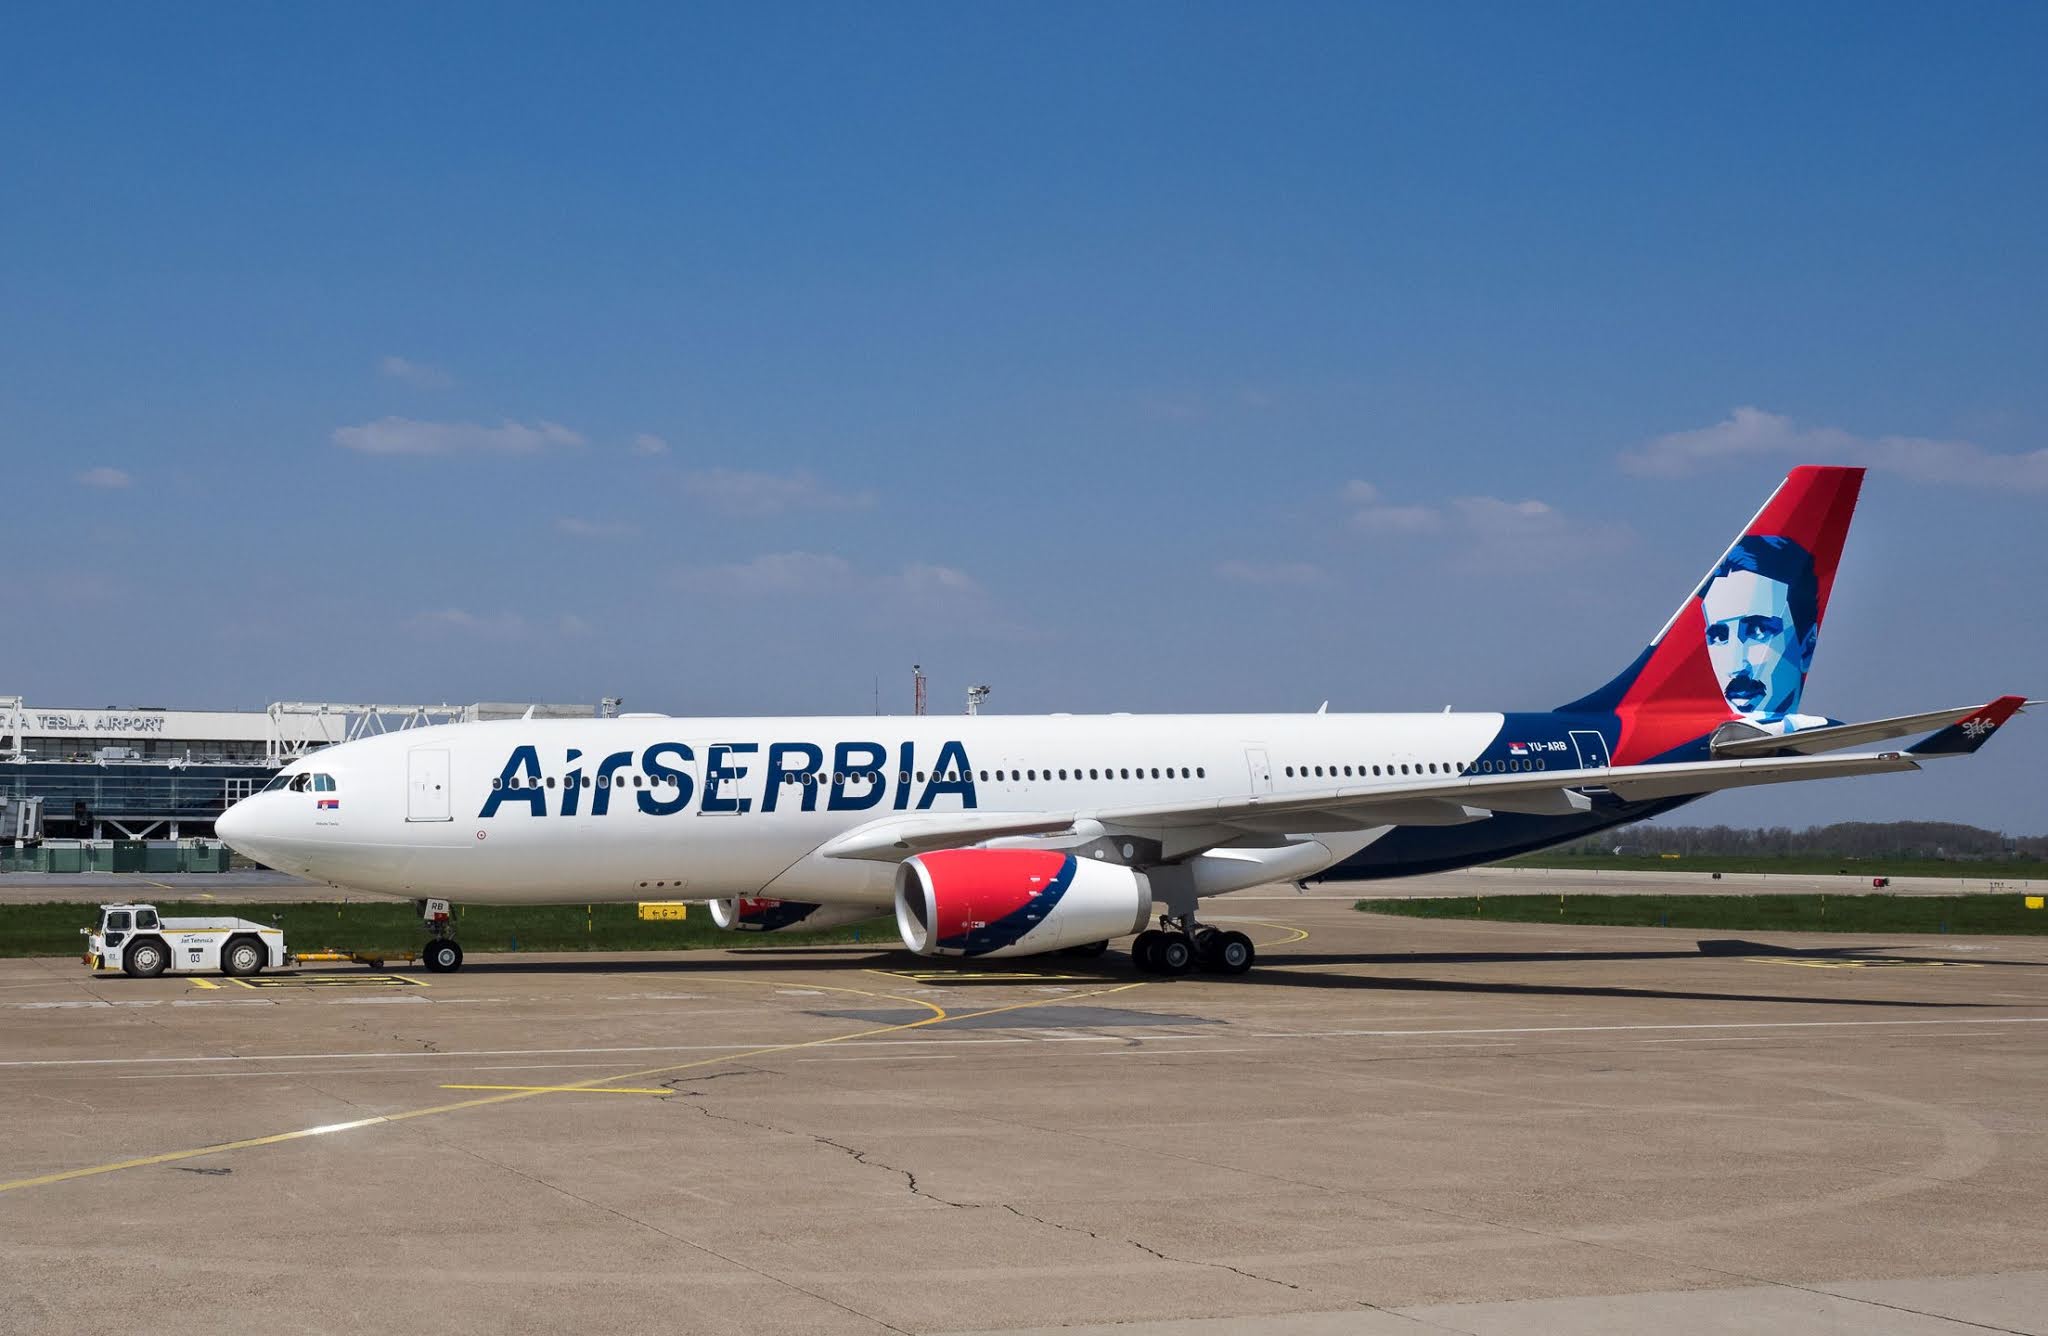 A330 Air Serbia. Airbus a330-200 Air Serbia. Air Serbia a330 JETPHOTOS. Air Serbia a330 Business. Аир сербия купить авиабилеты